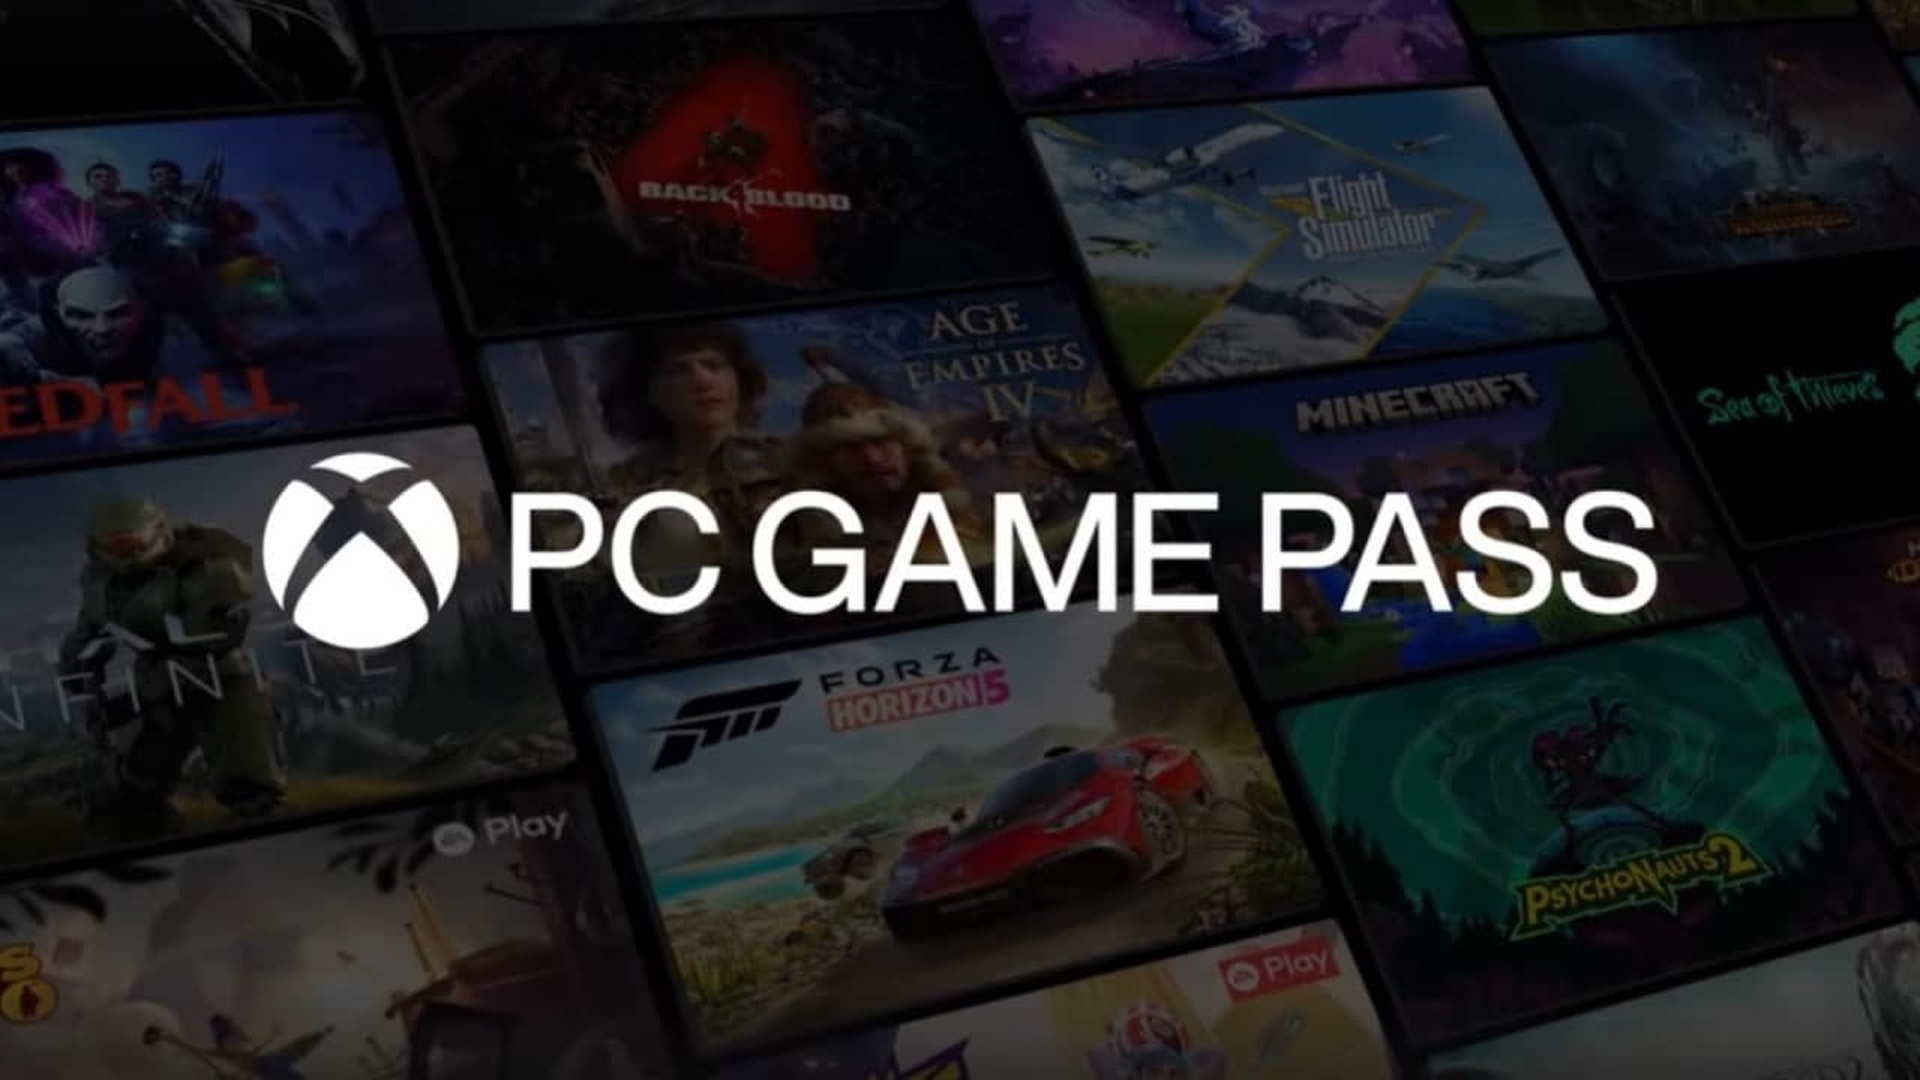 Microsoft te regala 3 meses de PC Game Pass si has jugado alguno de estos juegos